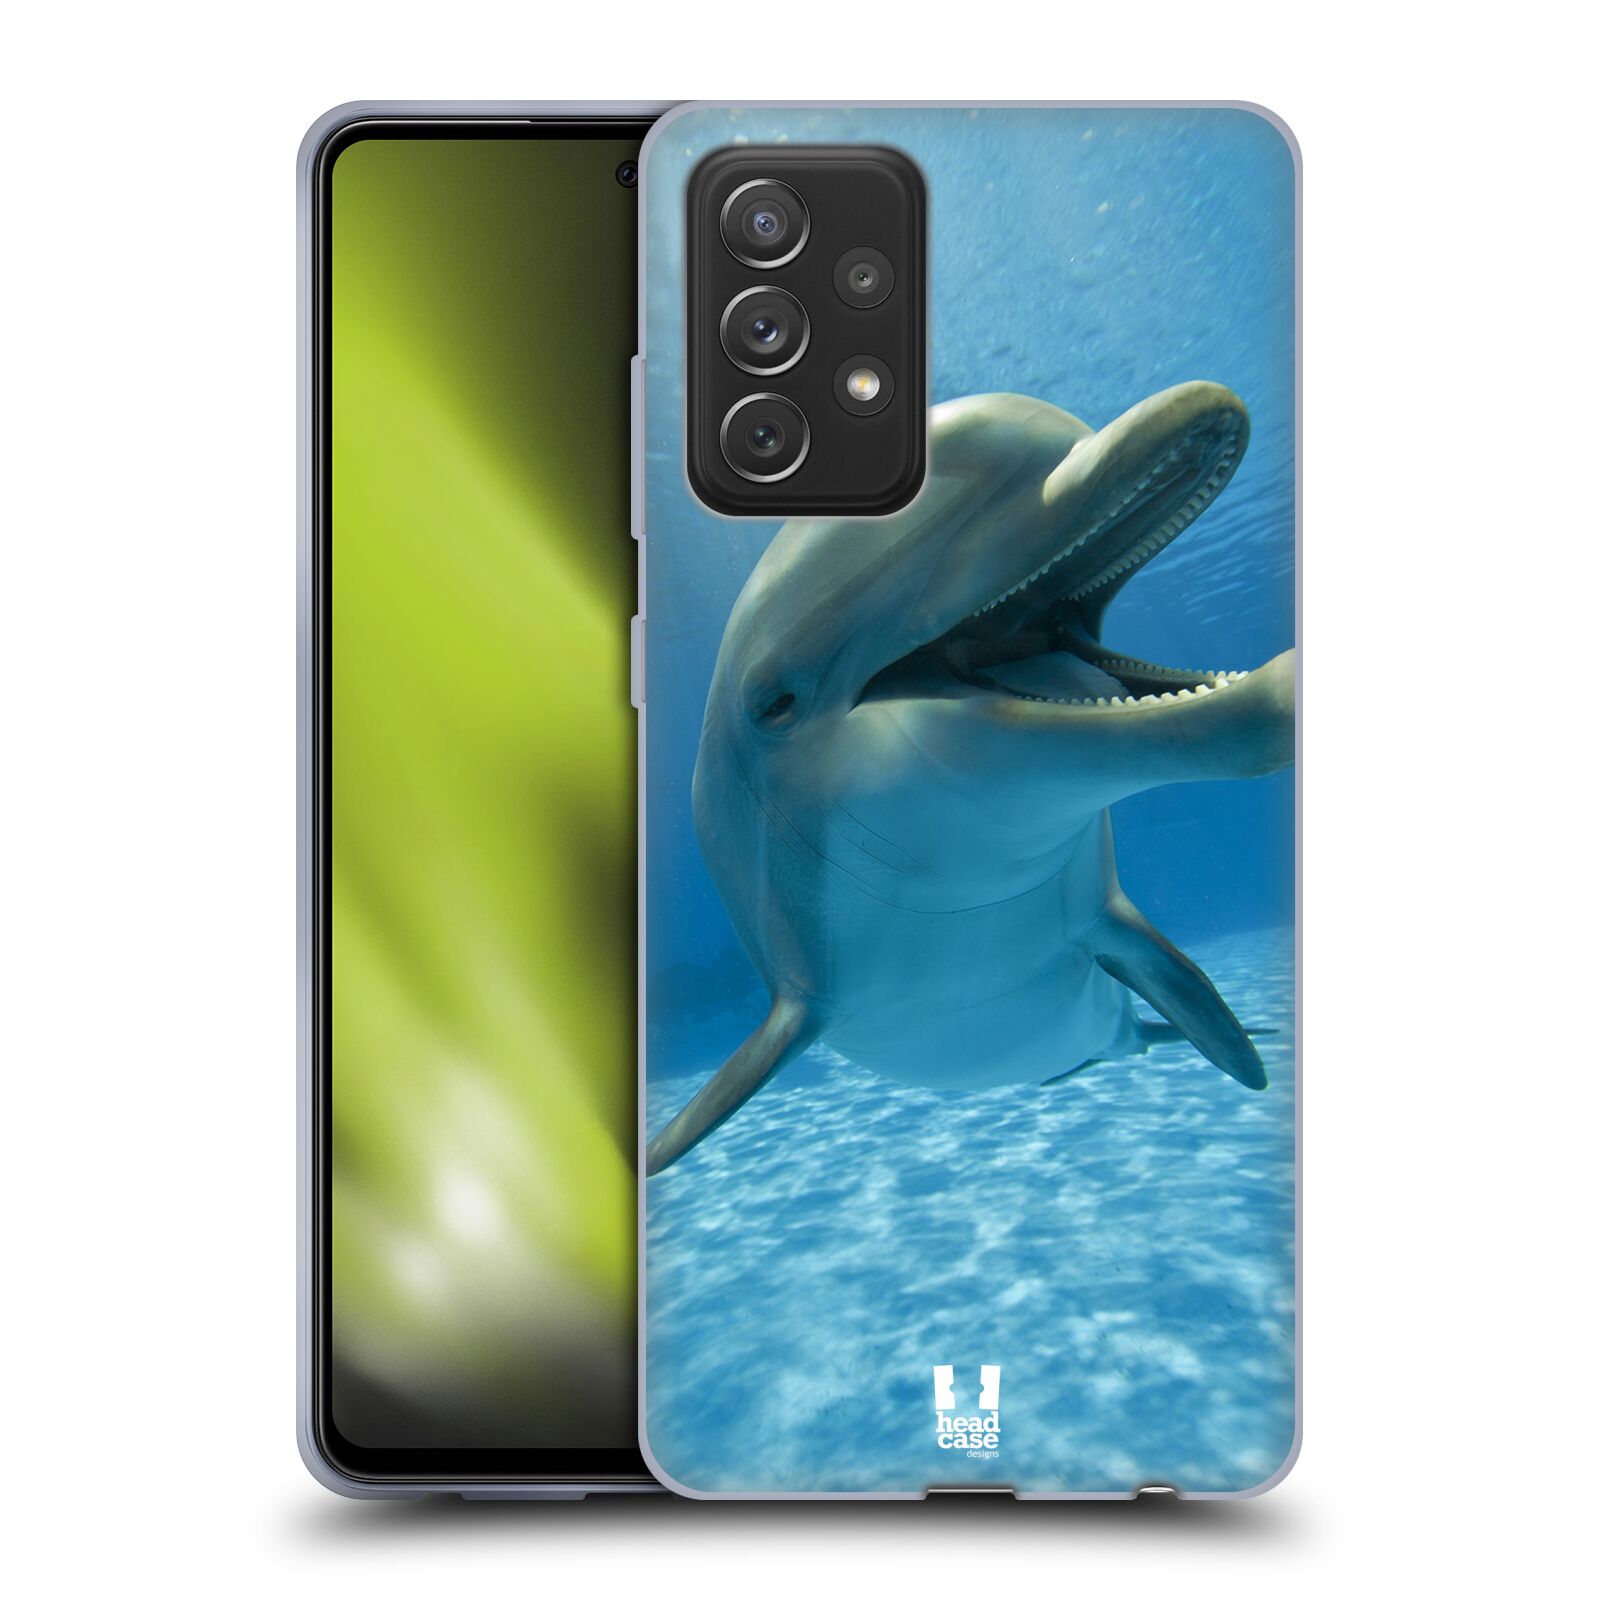 Zadní obal pro mobil Samsung Galaxy A72 / A72 5G - HEAD CASE - Svět zvířat delfín v moři